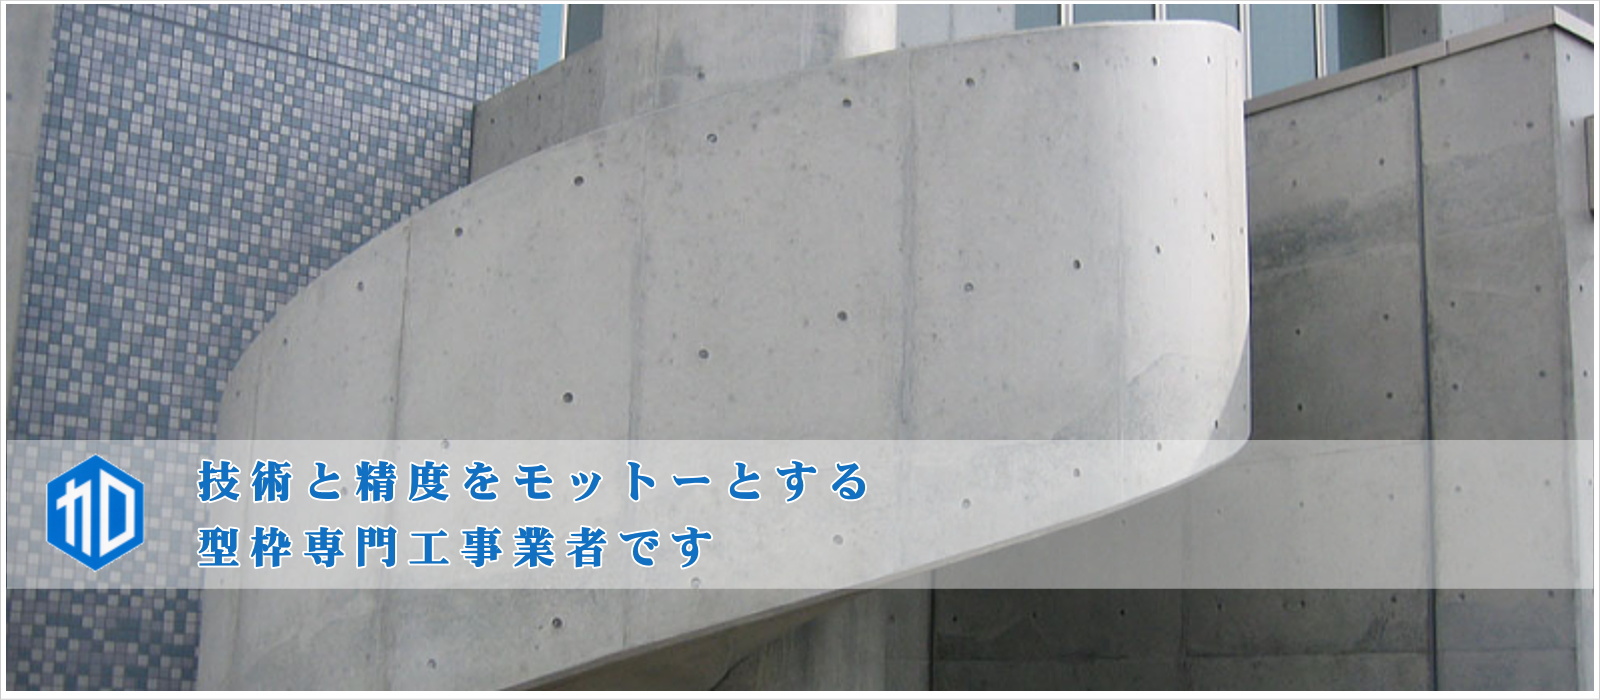 株式会社加藤建設 | 型枠工事のことなら静岡県浜松市の株式会社加藤建設へ